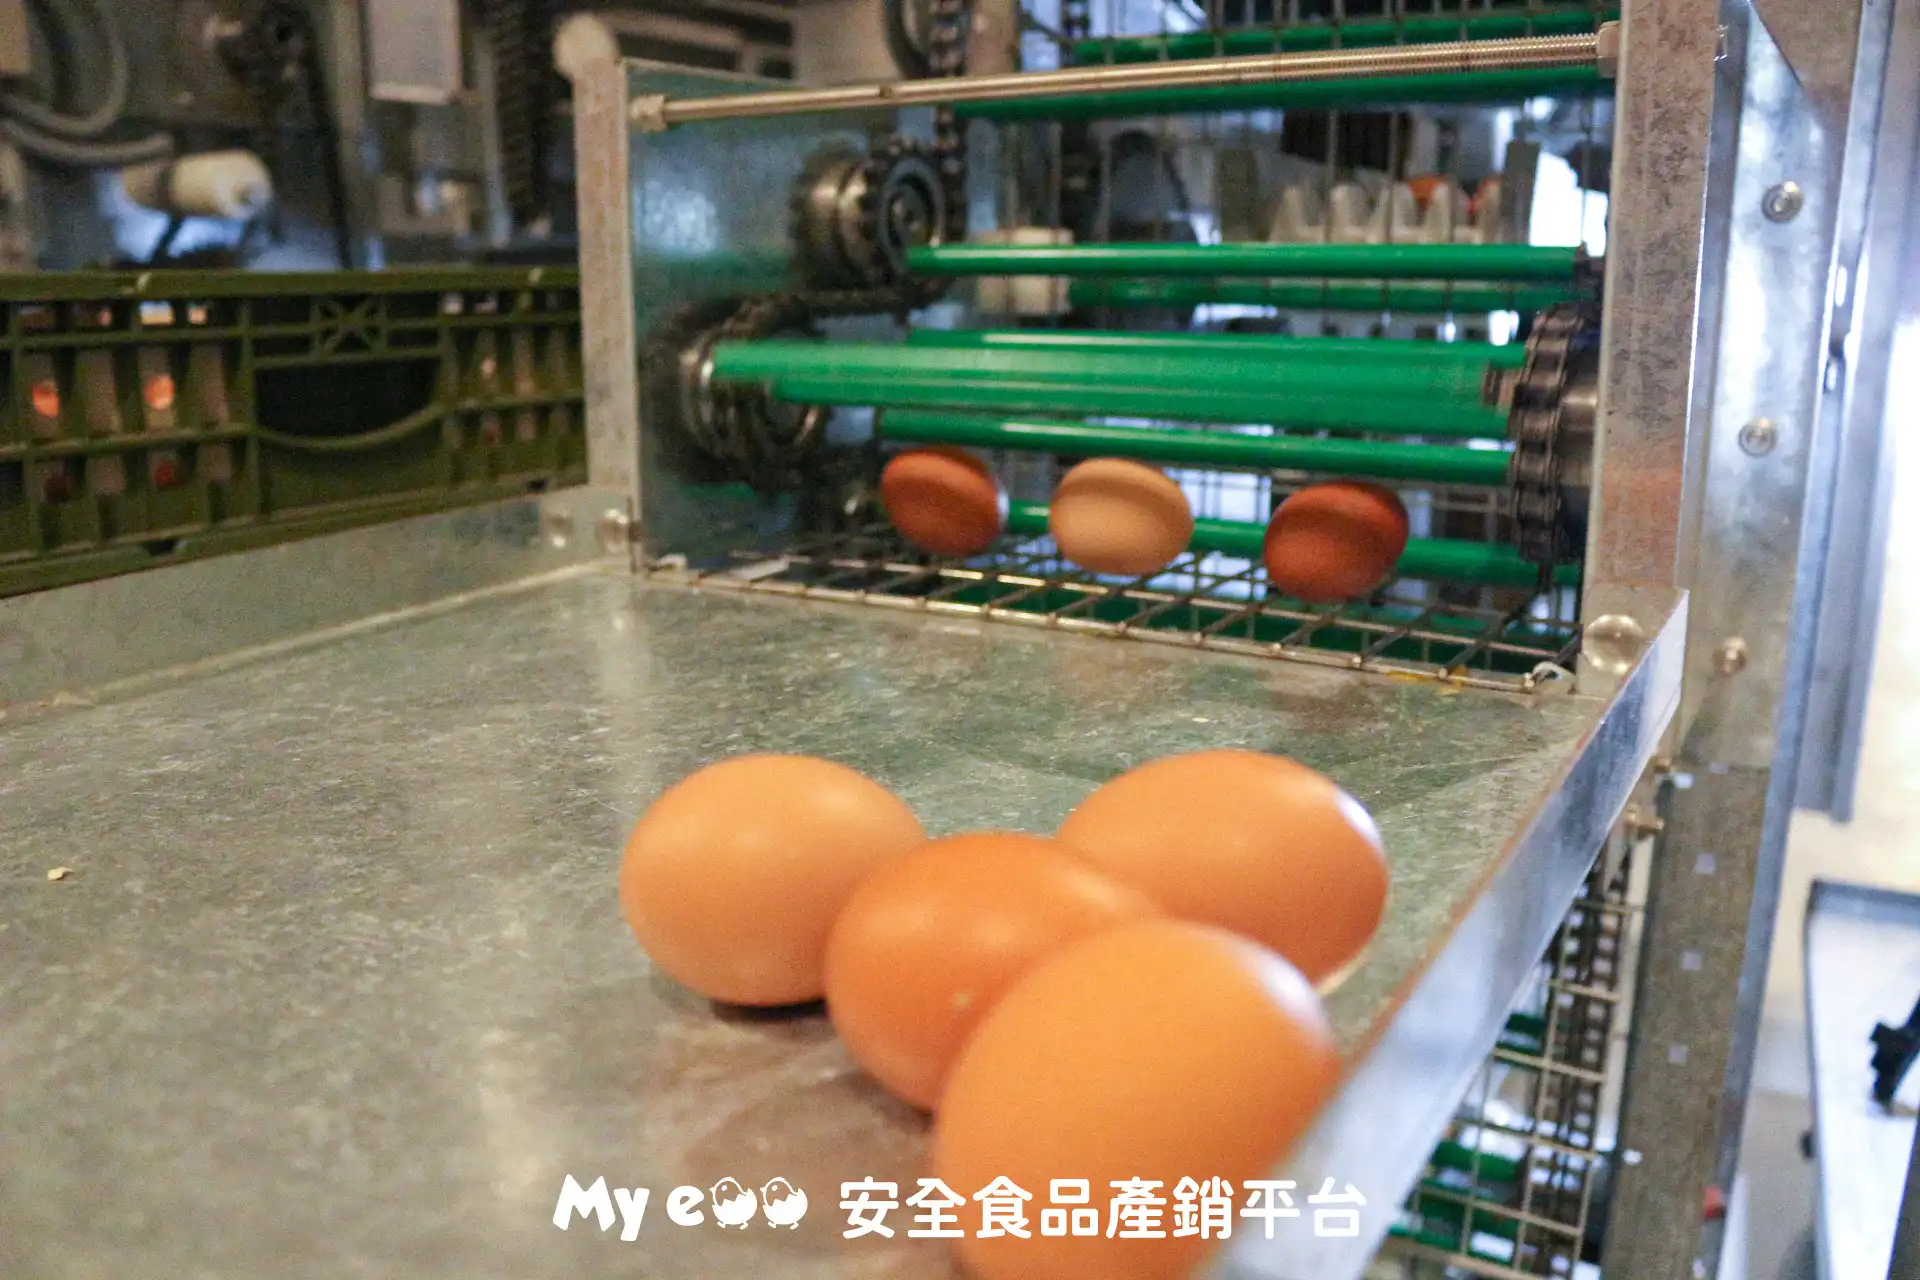 My egg 自動集蛋系統，減少人員進出雞舍而造成的汙染問題